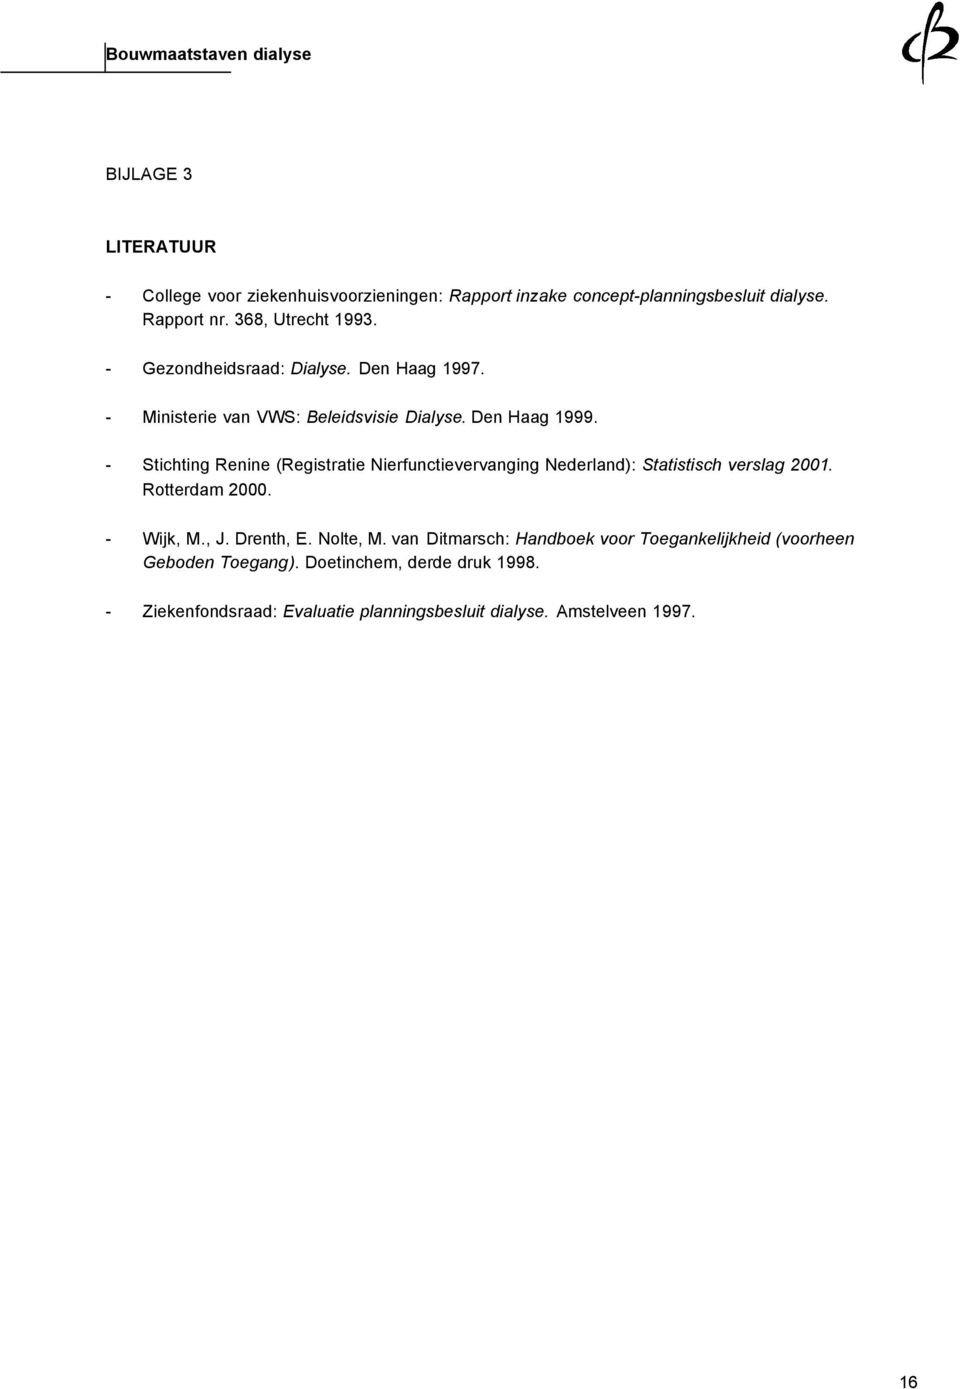 - Stichting Renine (Registratie Nierfunctievervanging Nederland: Statistisch verslag 2001. Rotterdam 2000. - Wijk, M., J. Drenth, E.